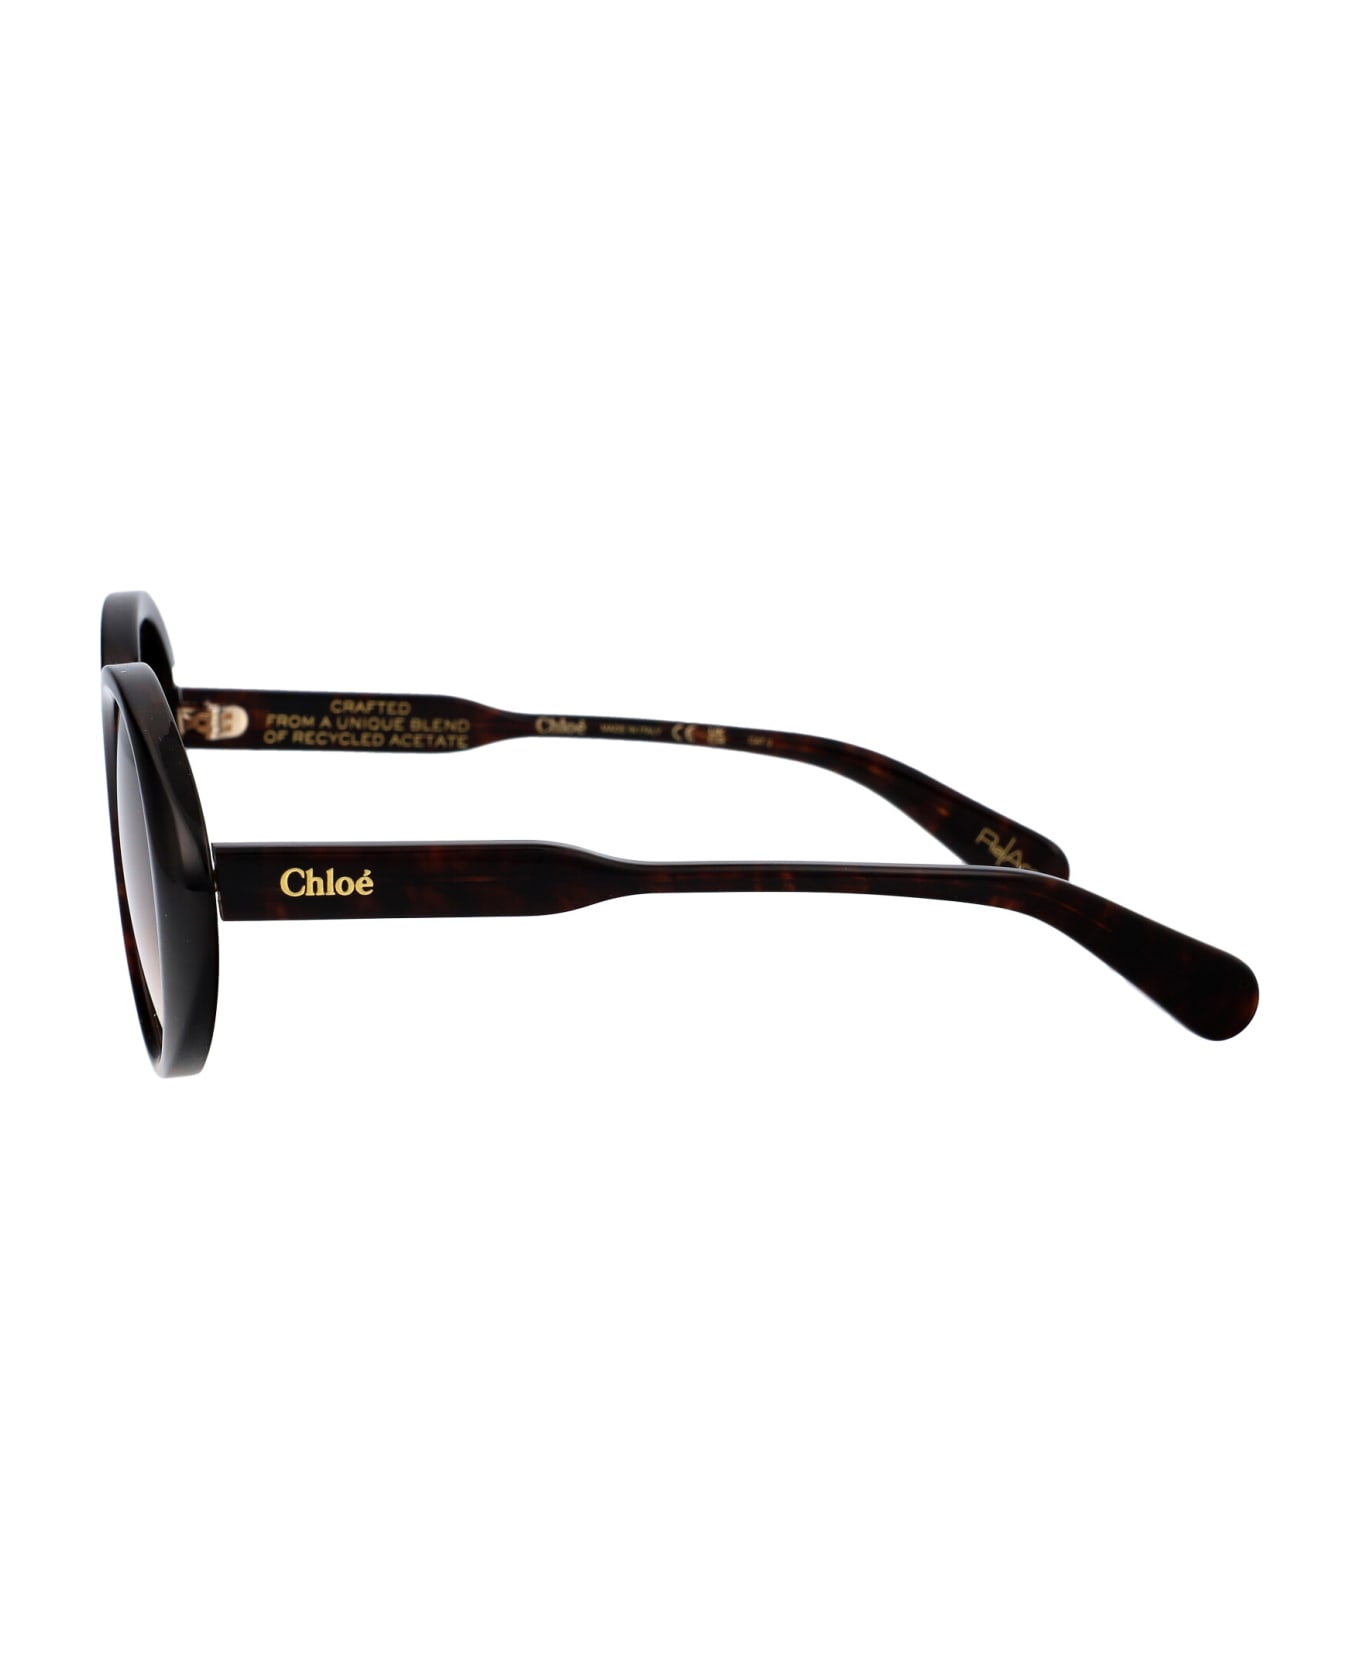 Chloé Eyewear Ch0221s Sunglasses - 002 HAVANA HAVANA BROWN